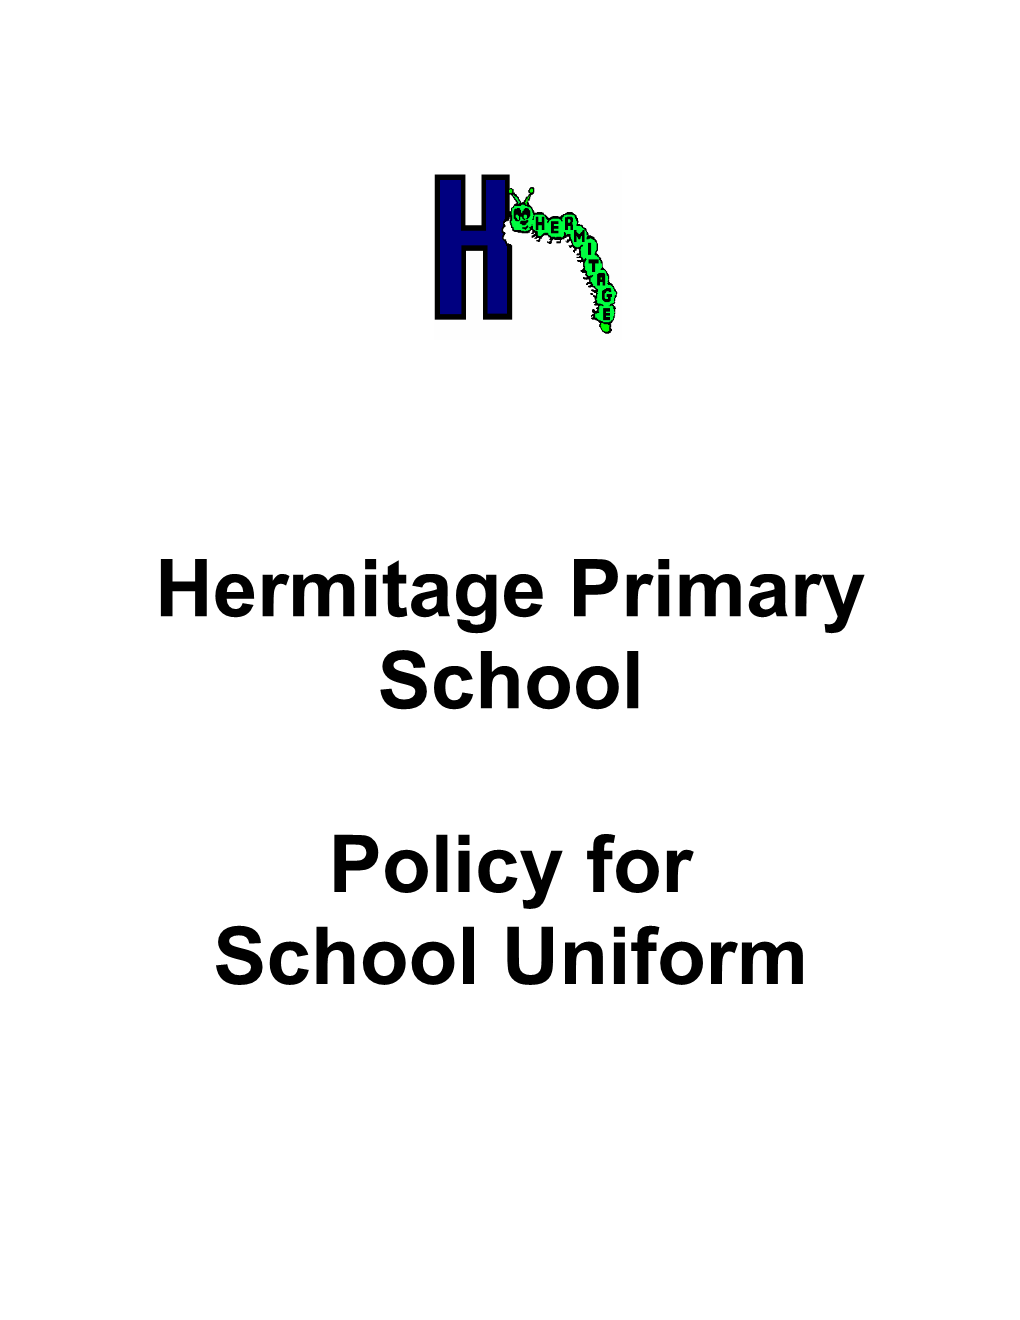 Hermitage Primary School Policy for School Uniform June 2007